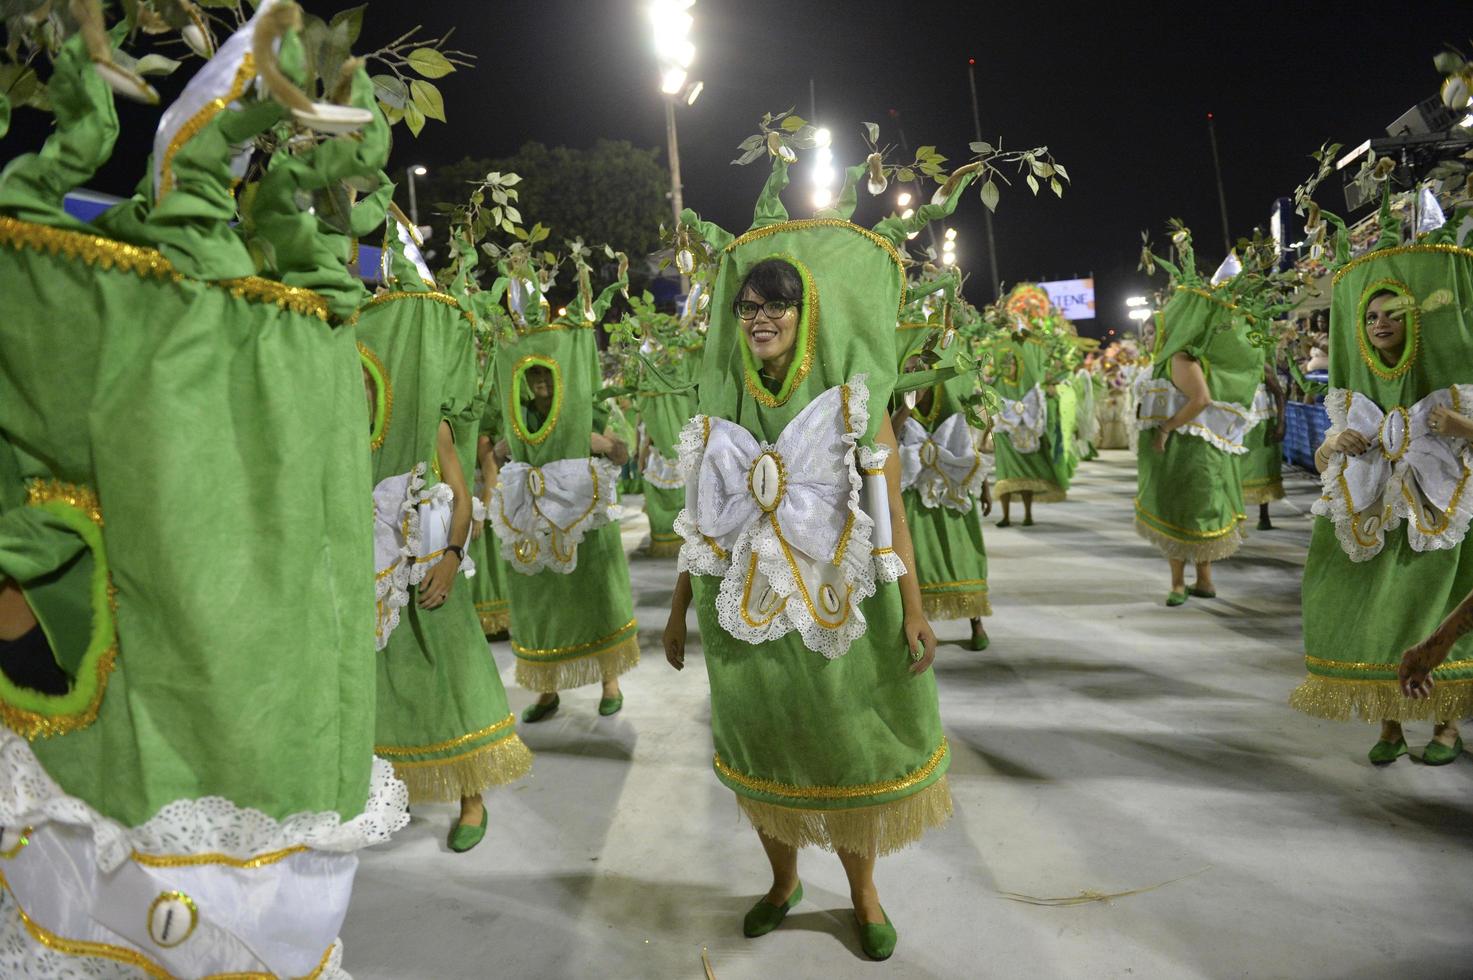 rio de janeiro, rj brazil - 09 de febrero de 2018 - desfile de la escuela de samba en el sambodromo. imperio da tijuca durante el festival en la calle marques de sapucai foto